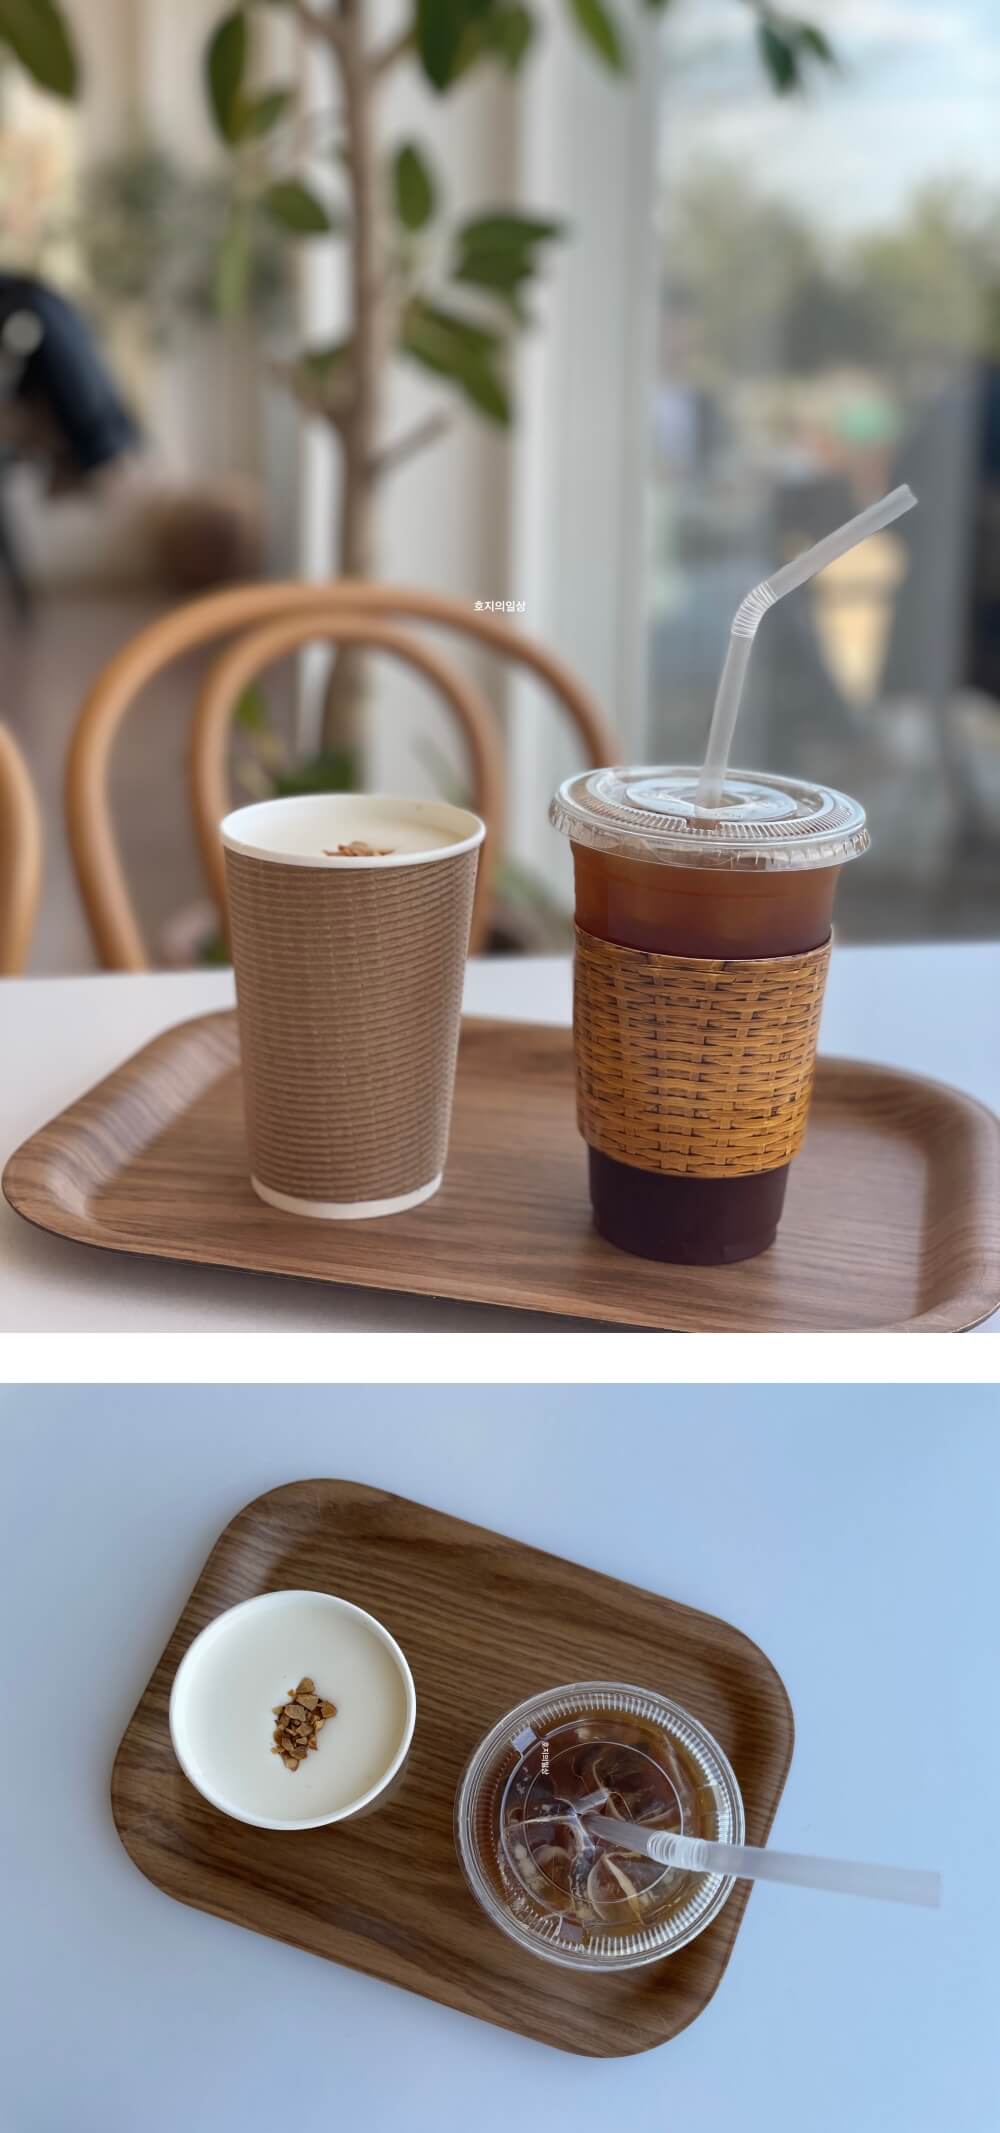 천안 서북 성거 커피 맛집 카페 이숲 - 주문한 메뉴